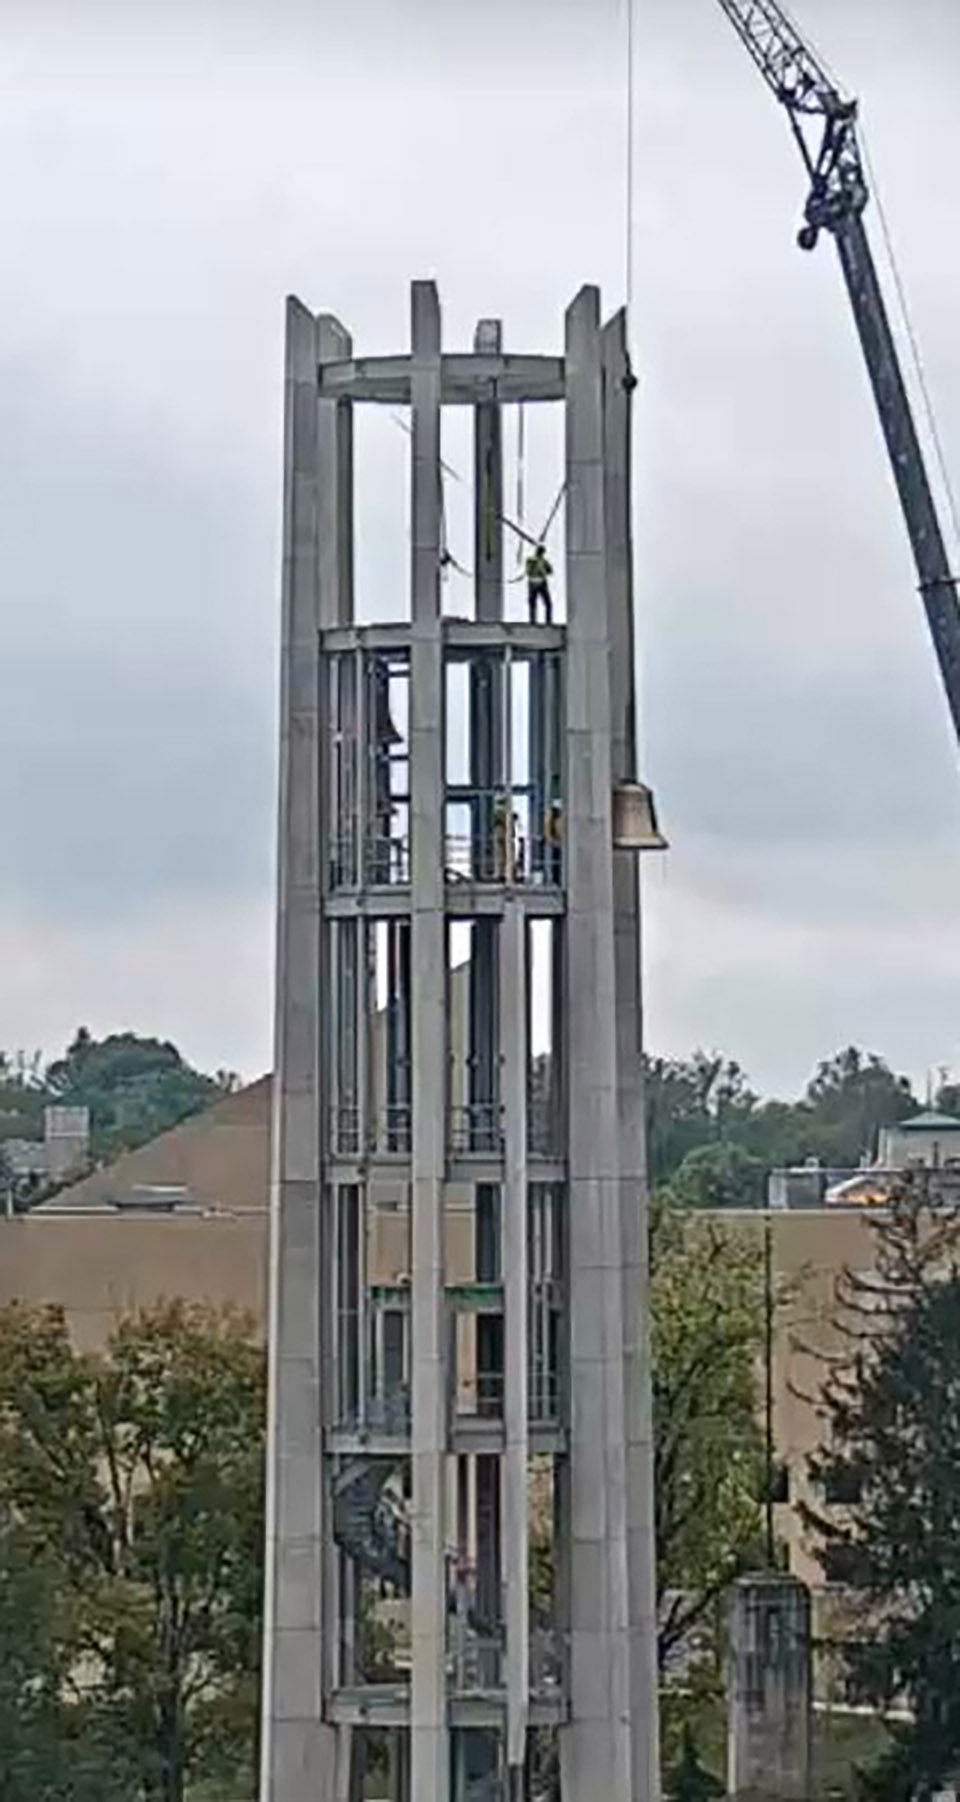 印第安纳大学钟琴塔，美国/印第安纳大学两百周年校庆的纪念钟塔-47